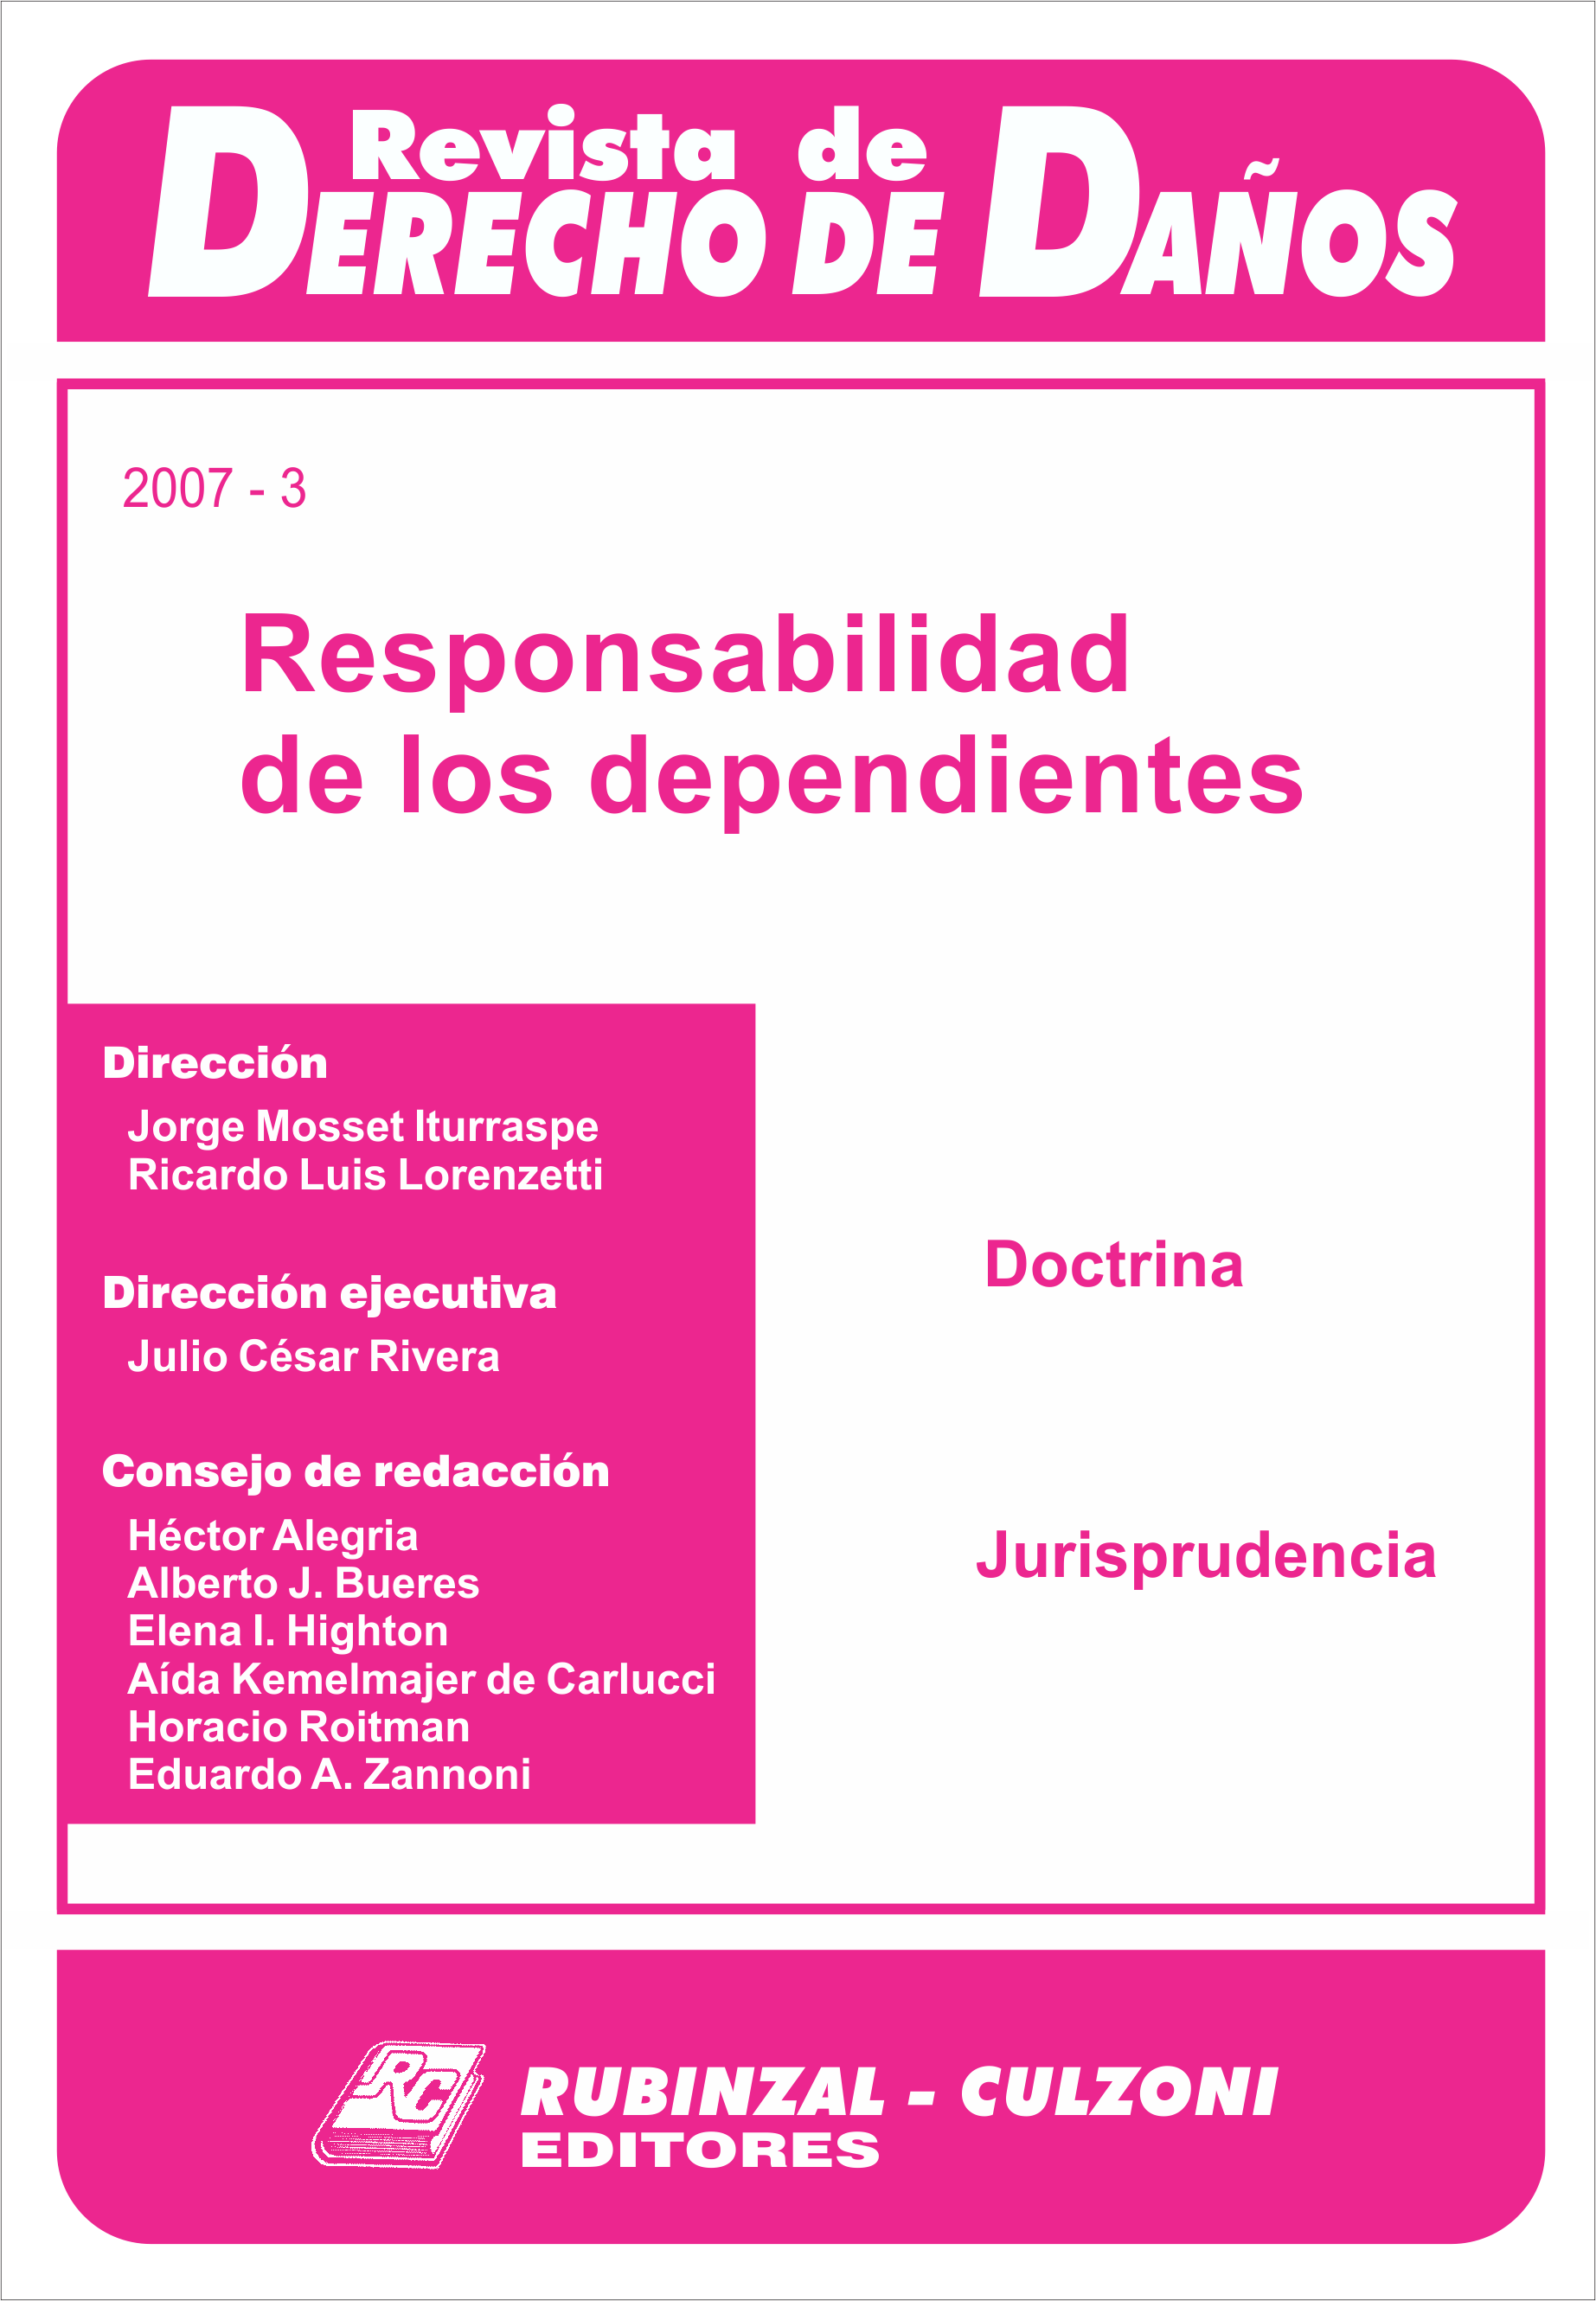 Responsabilidad de los dependientes. [2007-3]